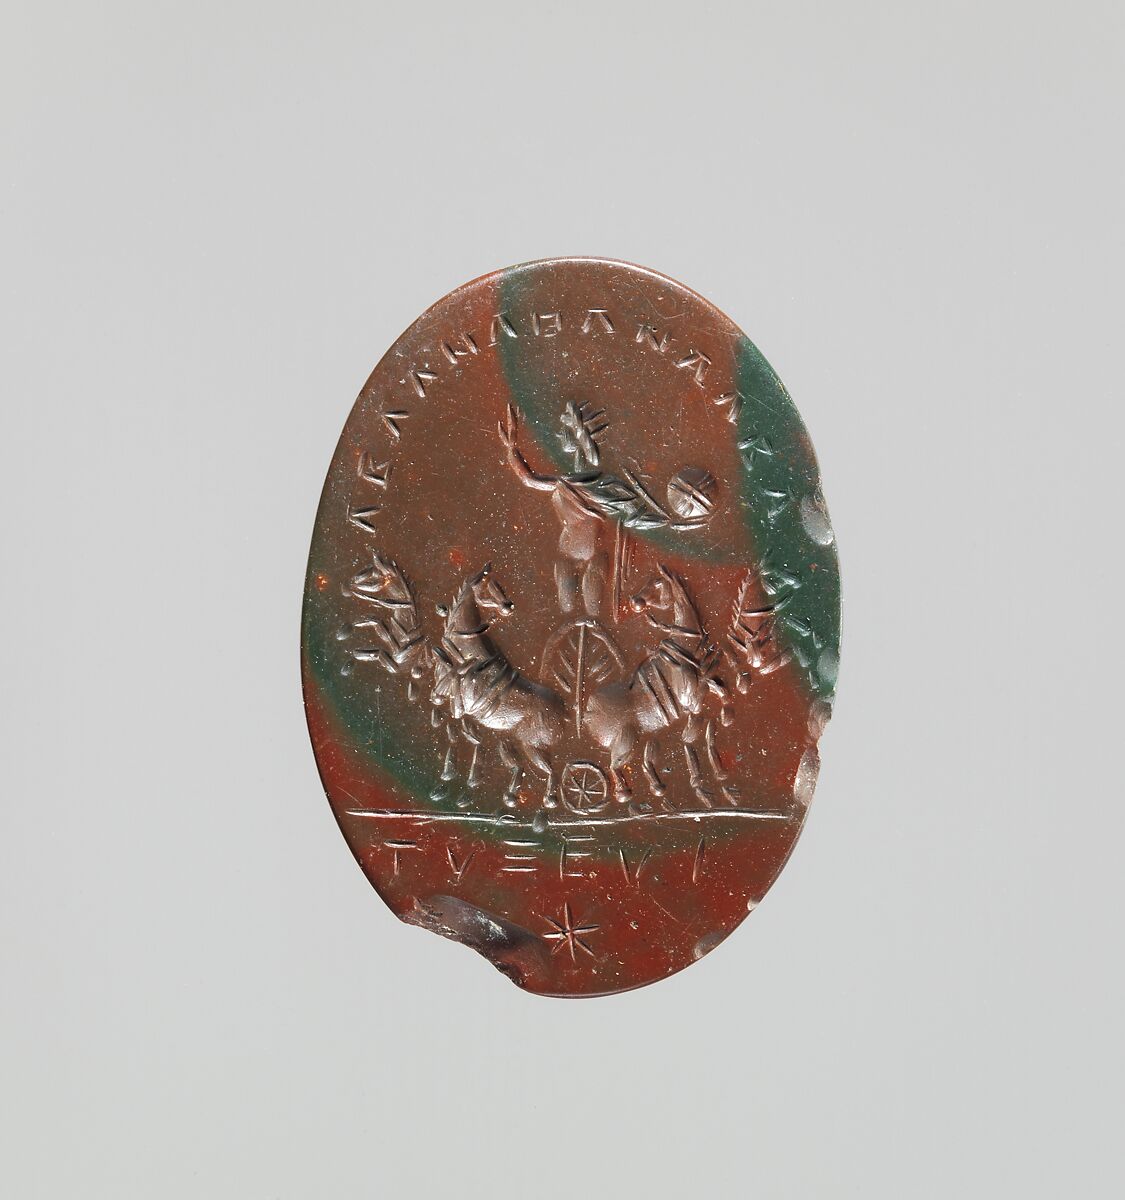 Jasper intaglio: Sol in a quadriga (four-horse chariot), Jasper, red and green, Roman 